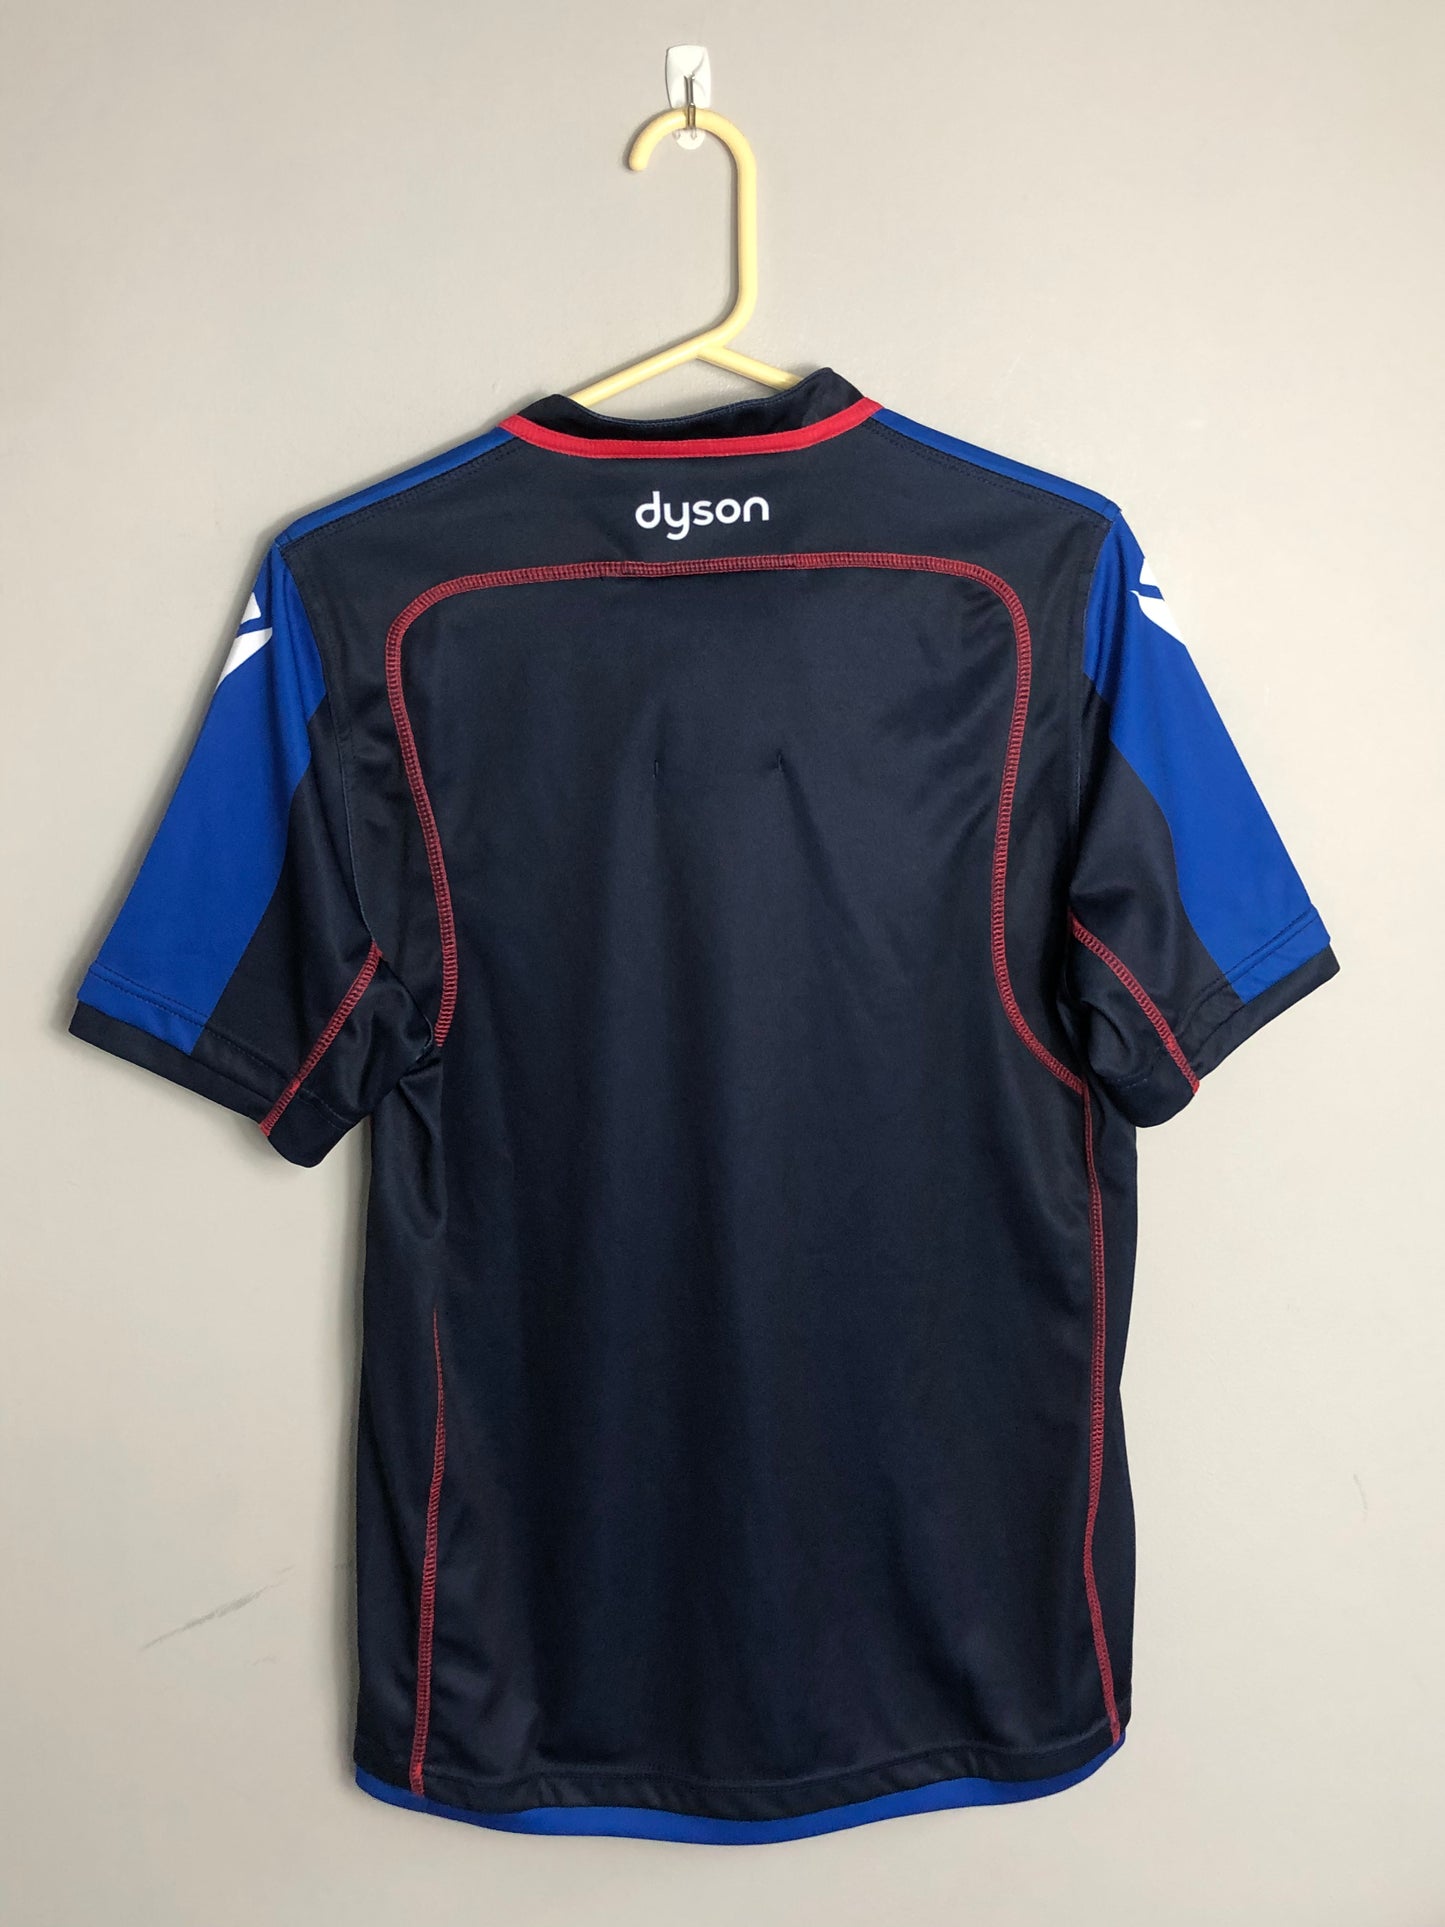 Bath Rugby Training Shirt - 38” Chest - Medium